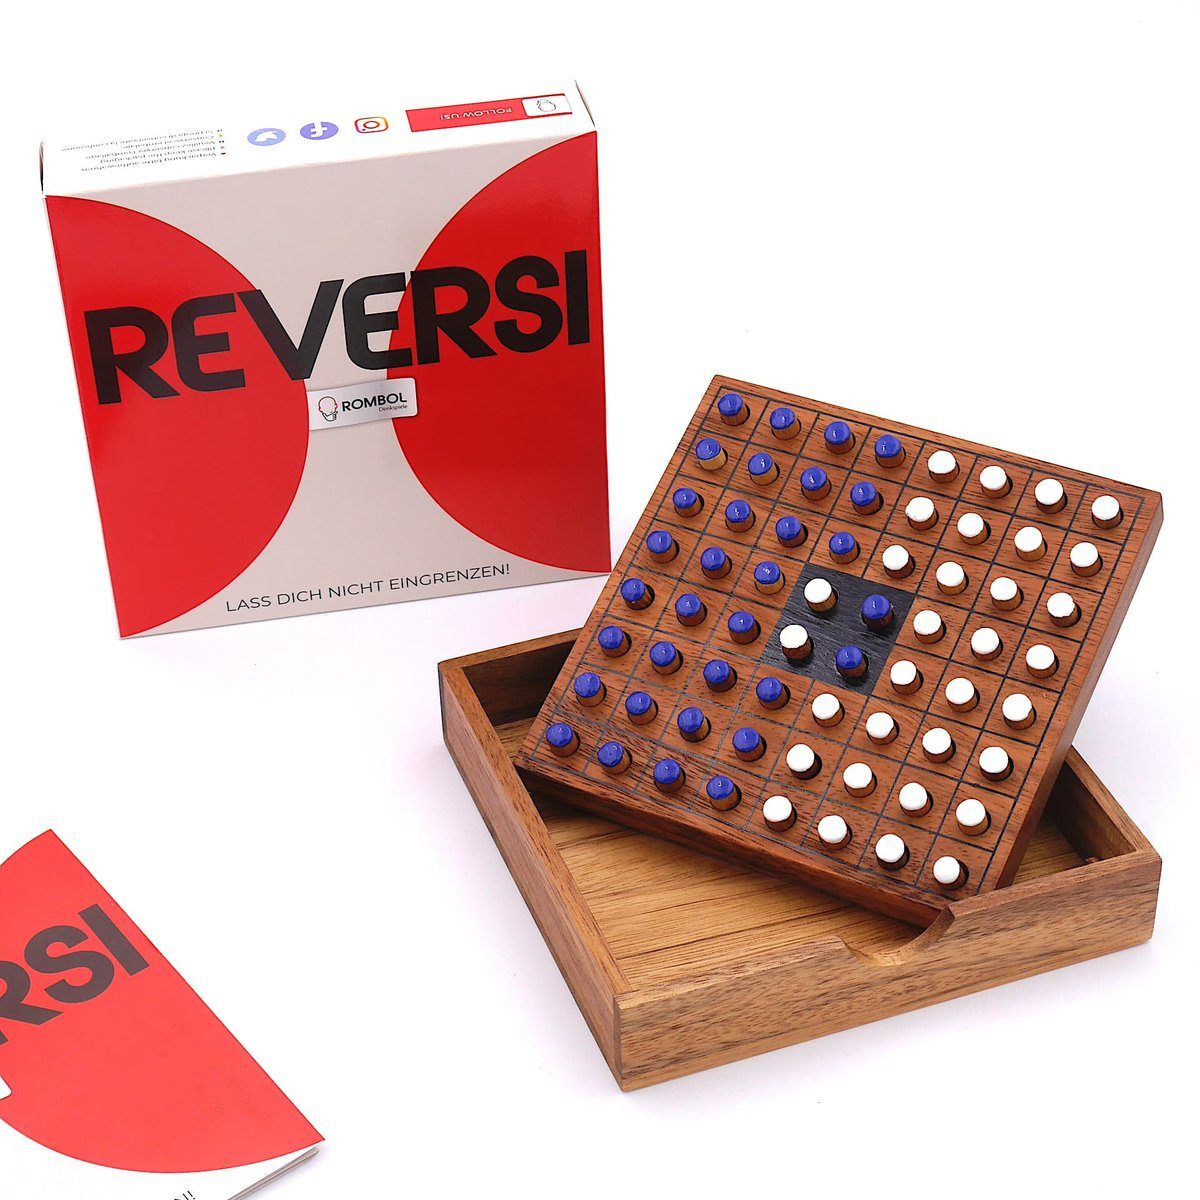 ROMBOL Denkspiele Spiel, Brettspiel Reversi – Interessantes Strategiespiel für 2 Personen aus edlem Holz, Holzspiel weiß/blau